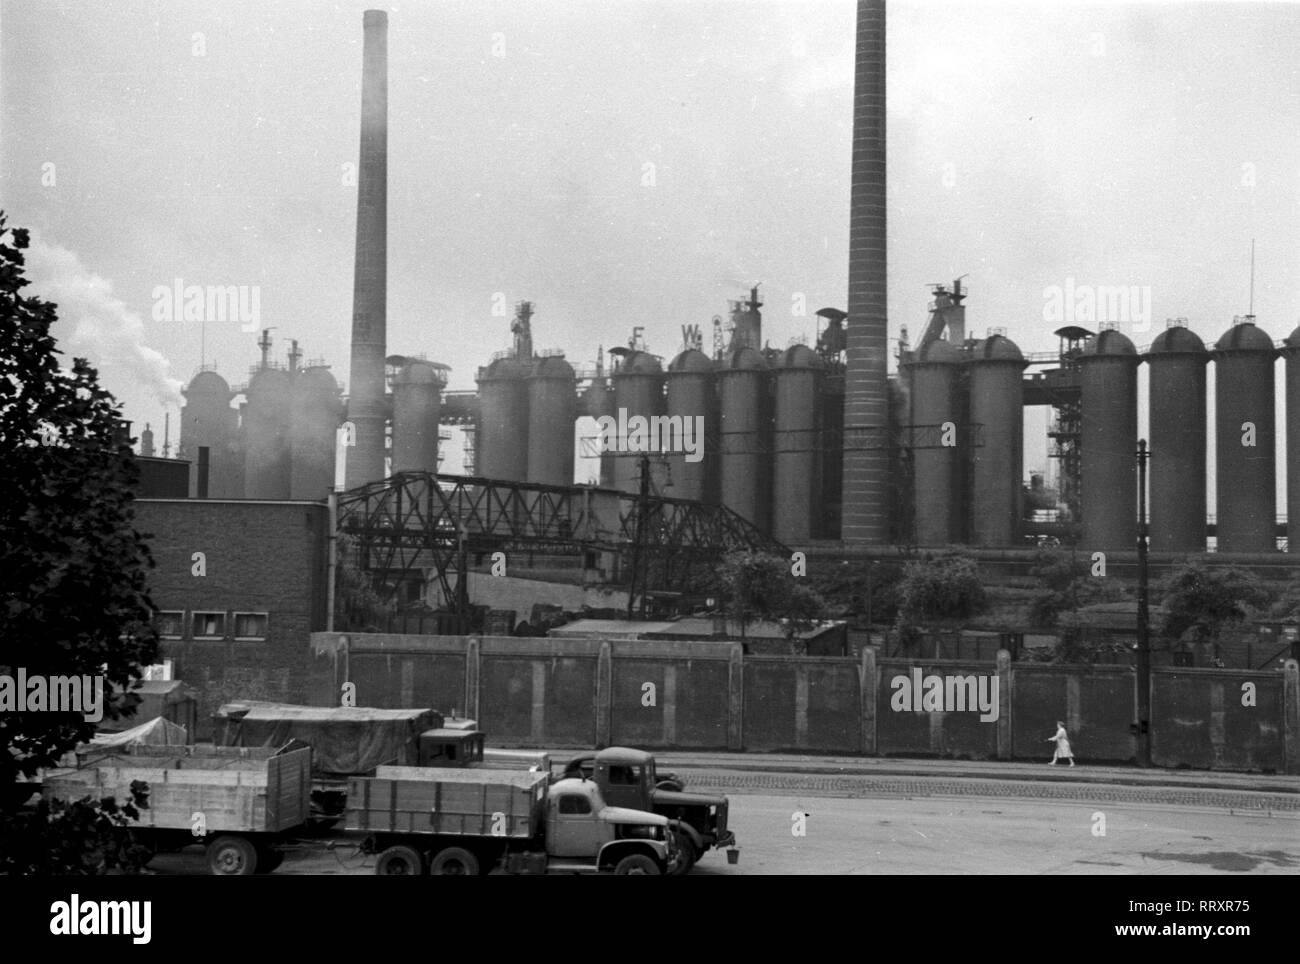 Alemania - Deutschland ca. 1950, Ruhrgebiet, Friedrich-Wilhelm-Hütte en Mülheim an der Ruhr. Foto de stock